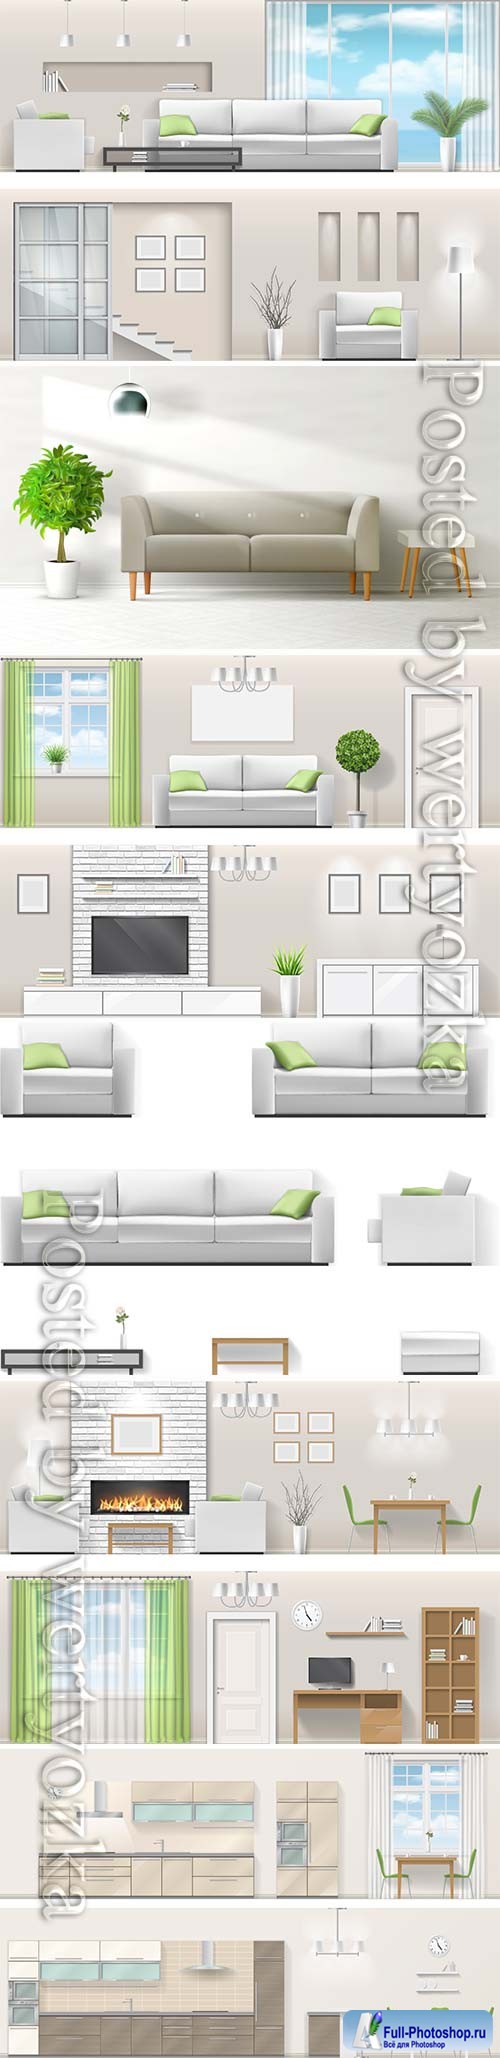 Modern interior in vector, kitchen, living room, bedroom